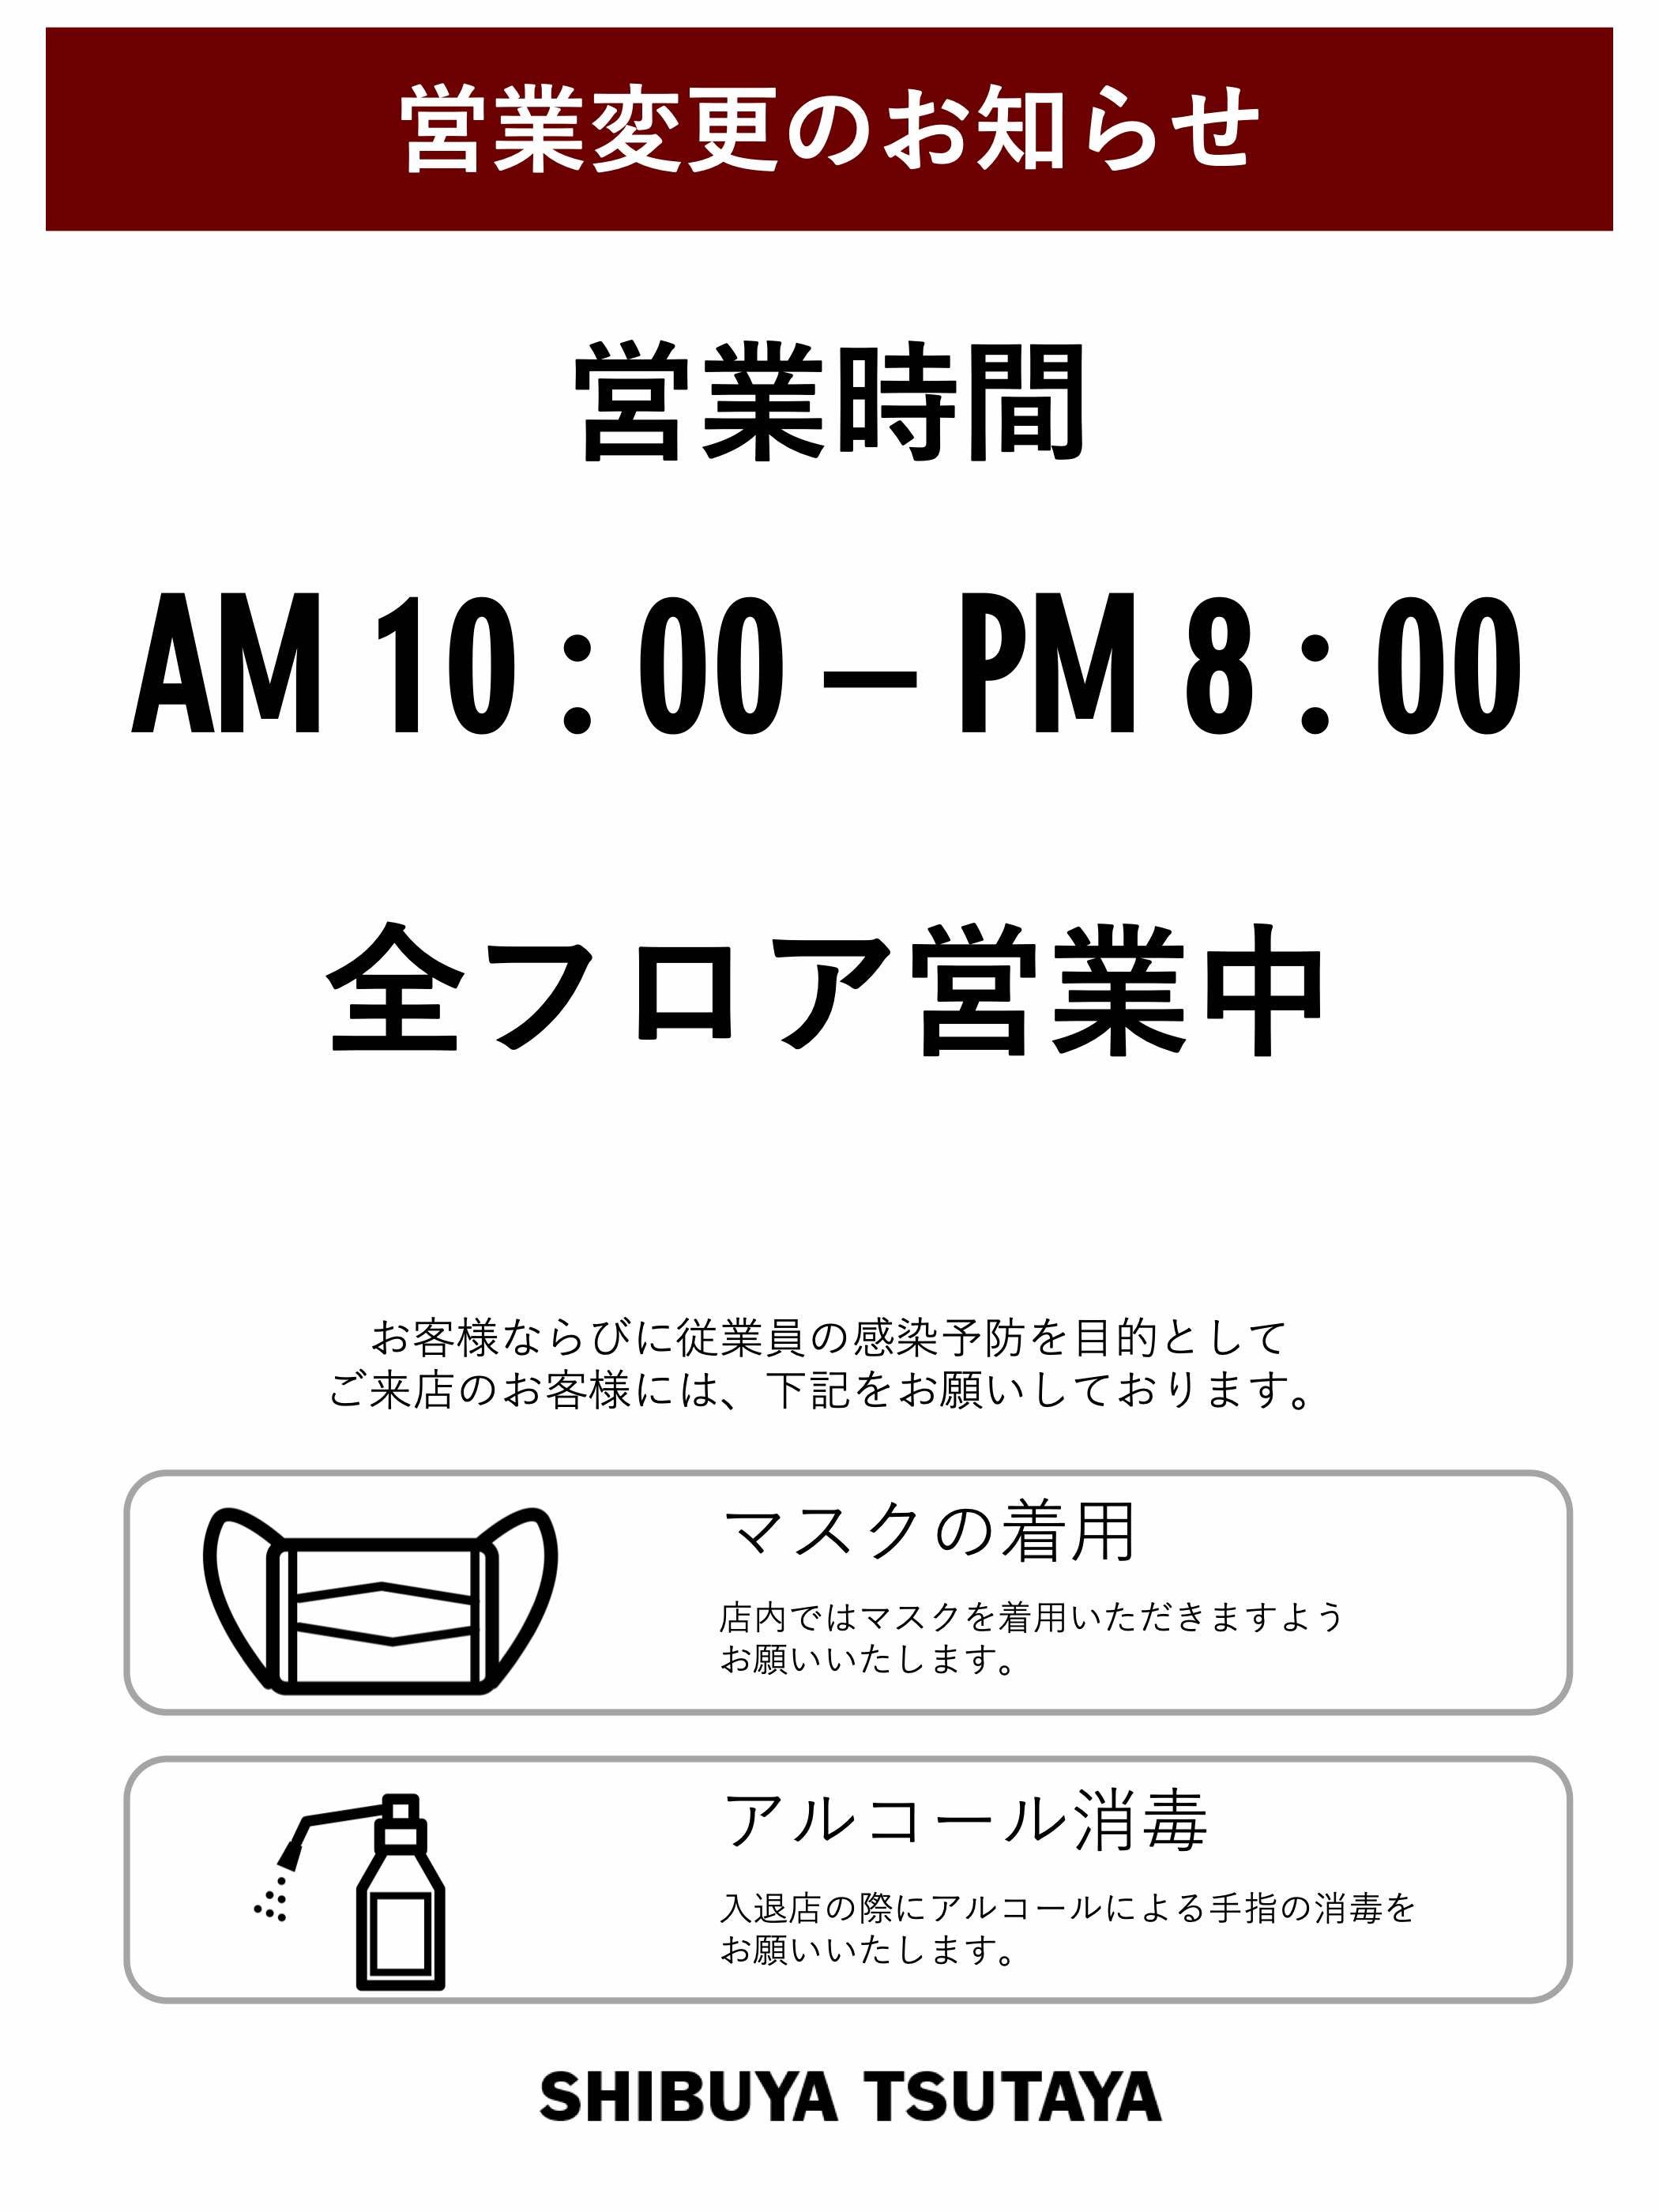 営業変更に関するお知らせ Shibuya Tsutaya Information